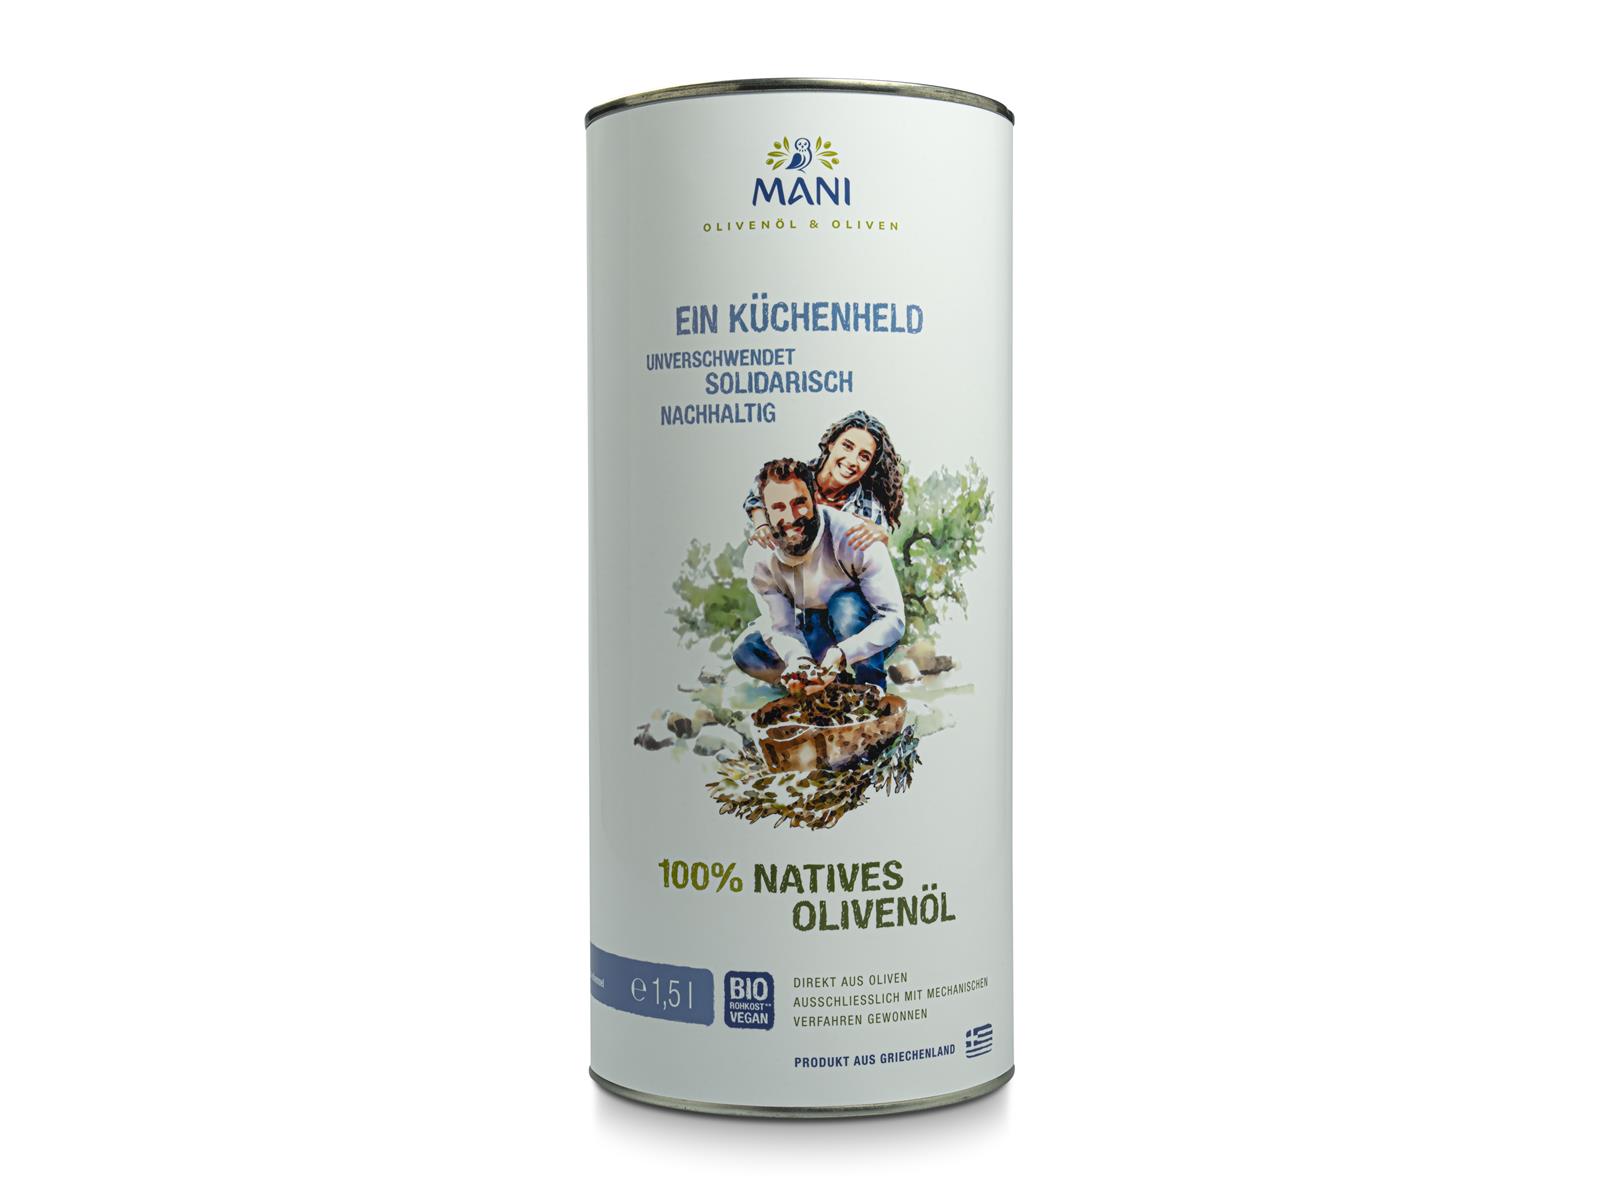 Mani Bläuel MANI 100% natives Olivenöl 1,5l